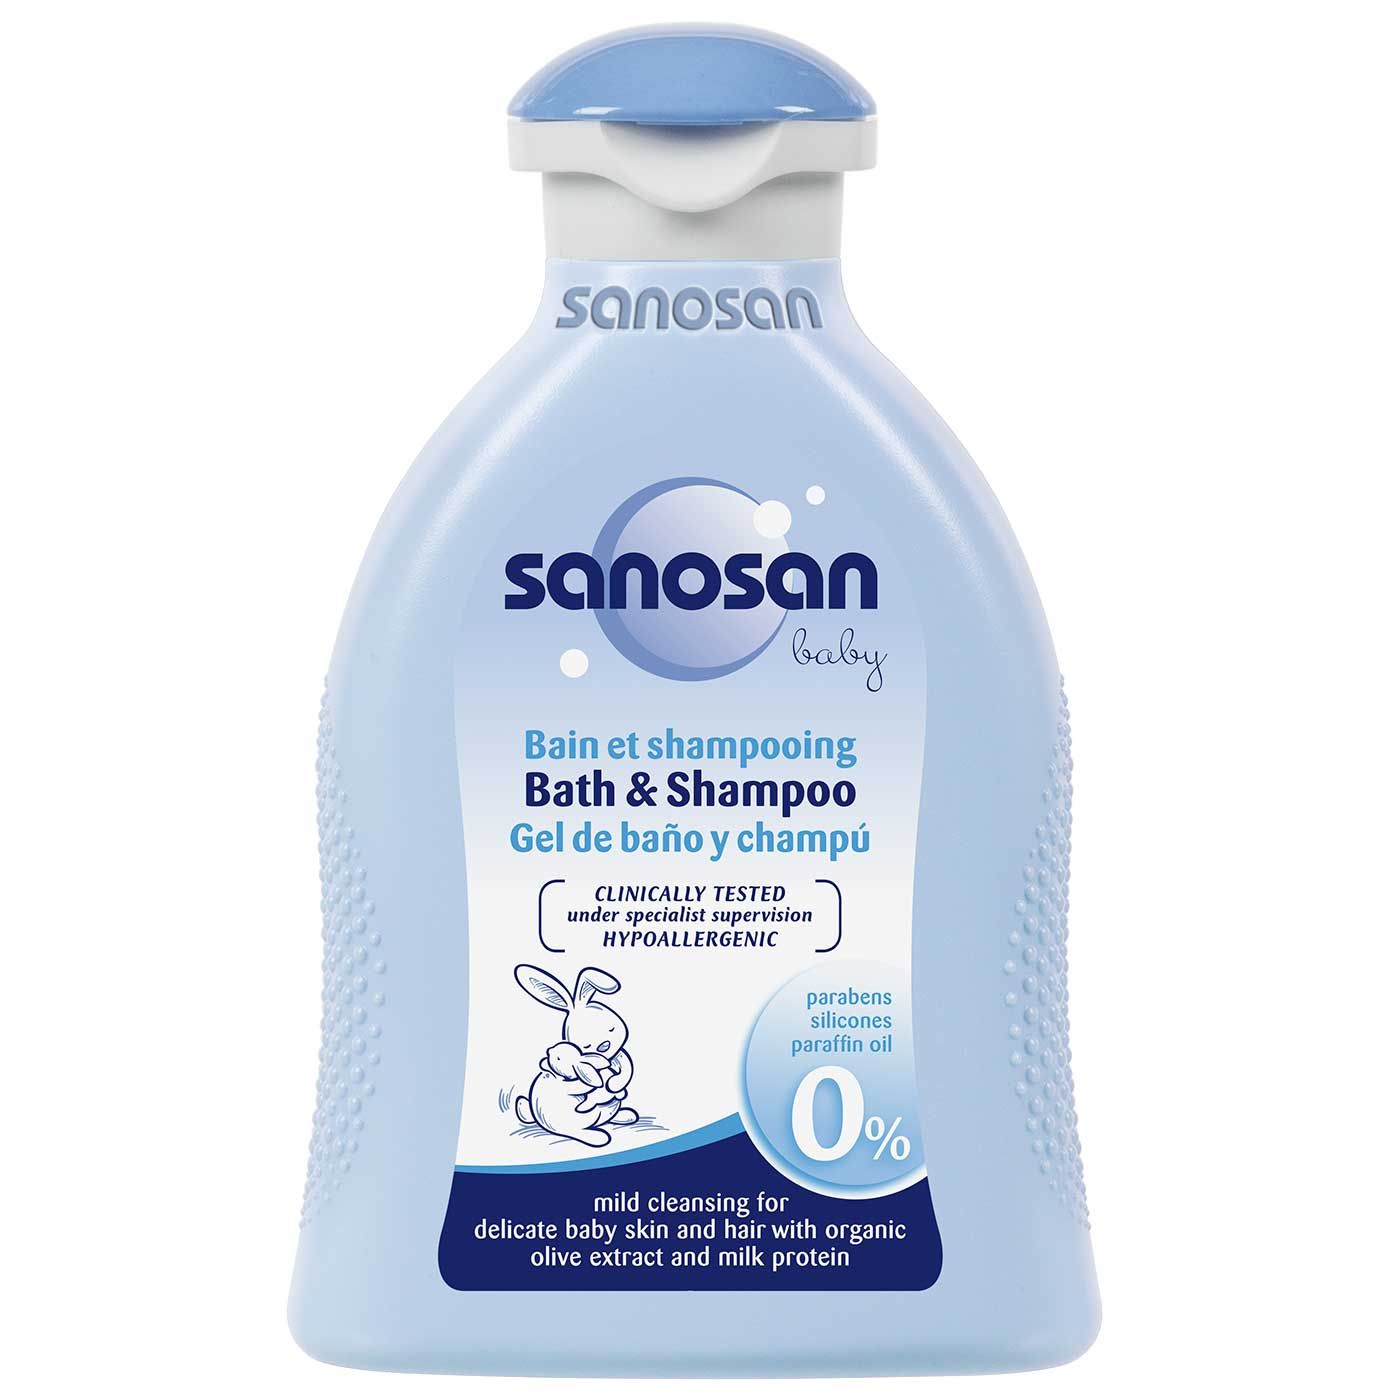 Sanosan Bath & Shampoo 200ml - 1